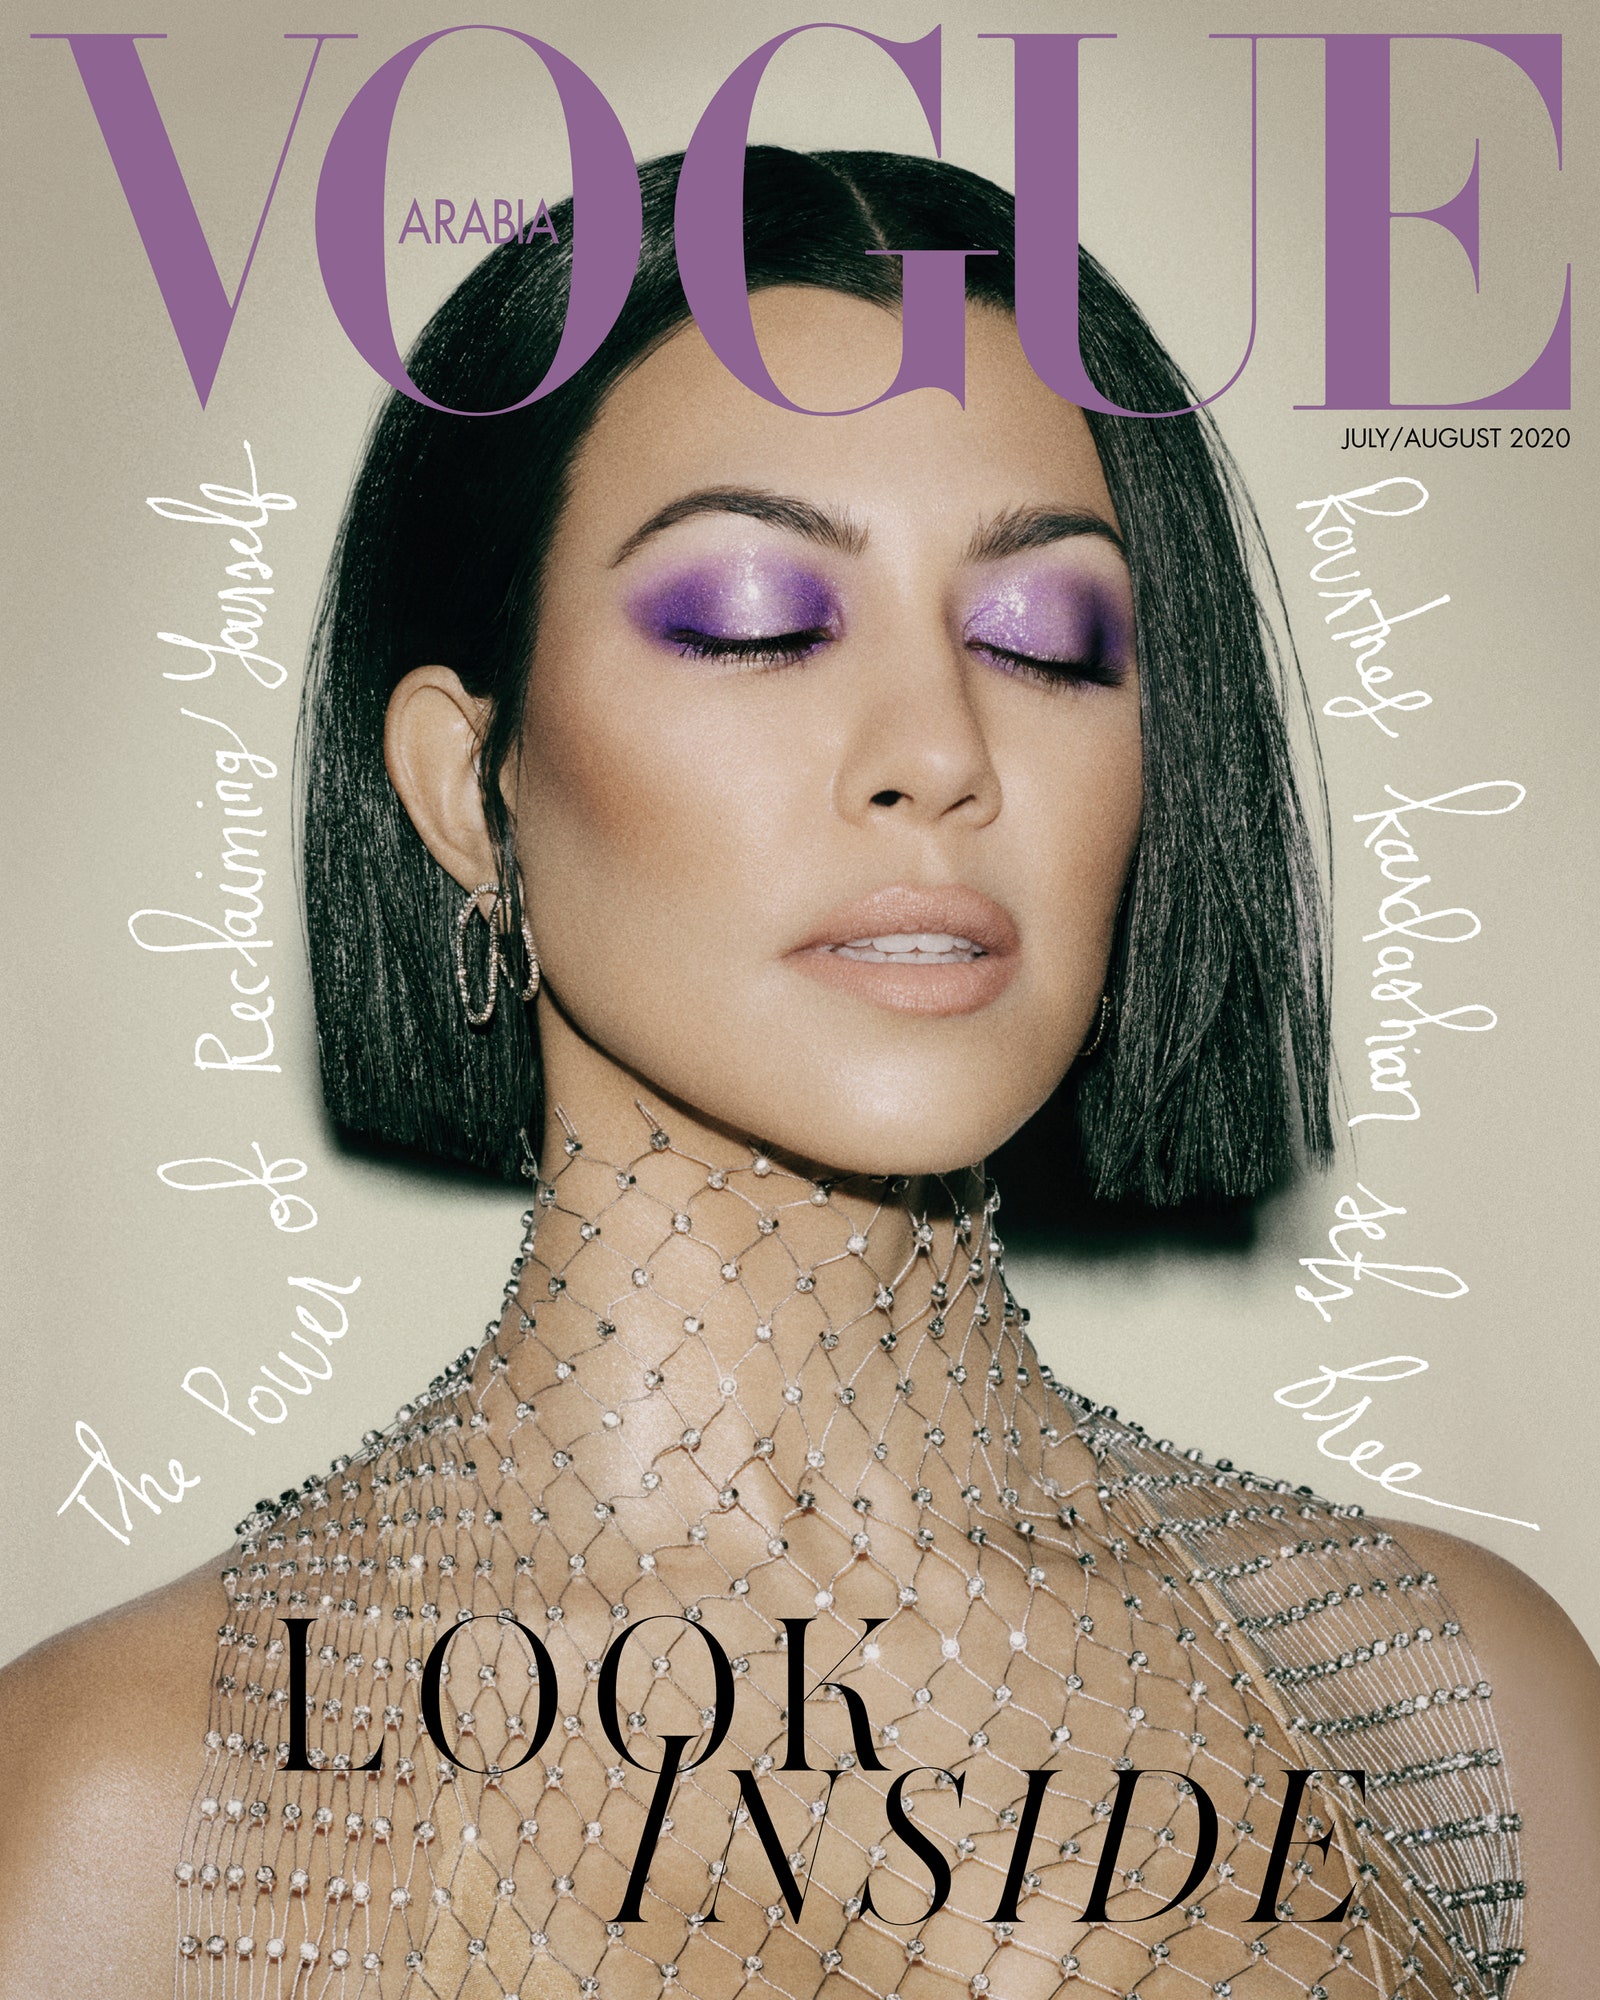 Обложка Vogue Arabia в июлеавгусте 2020